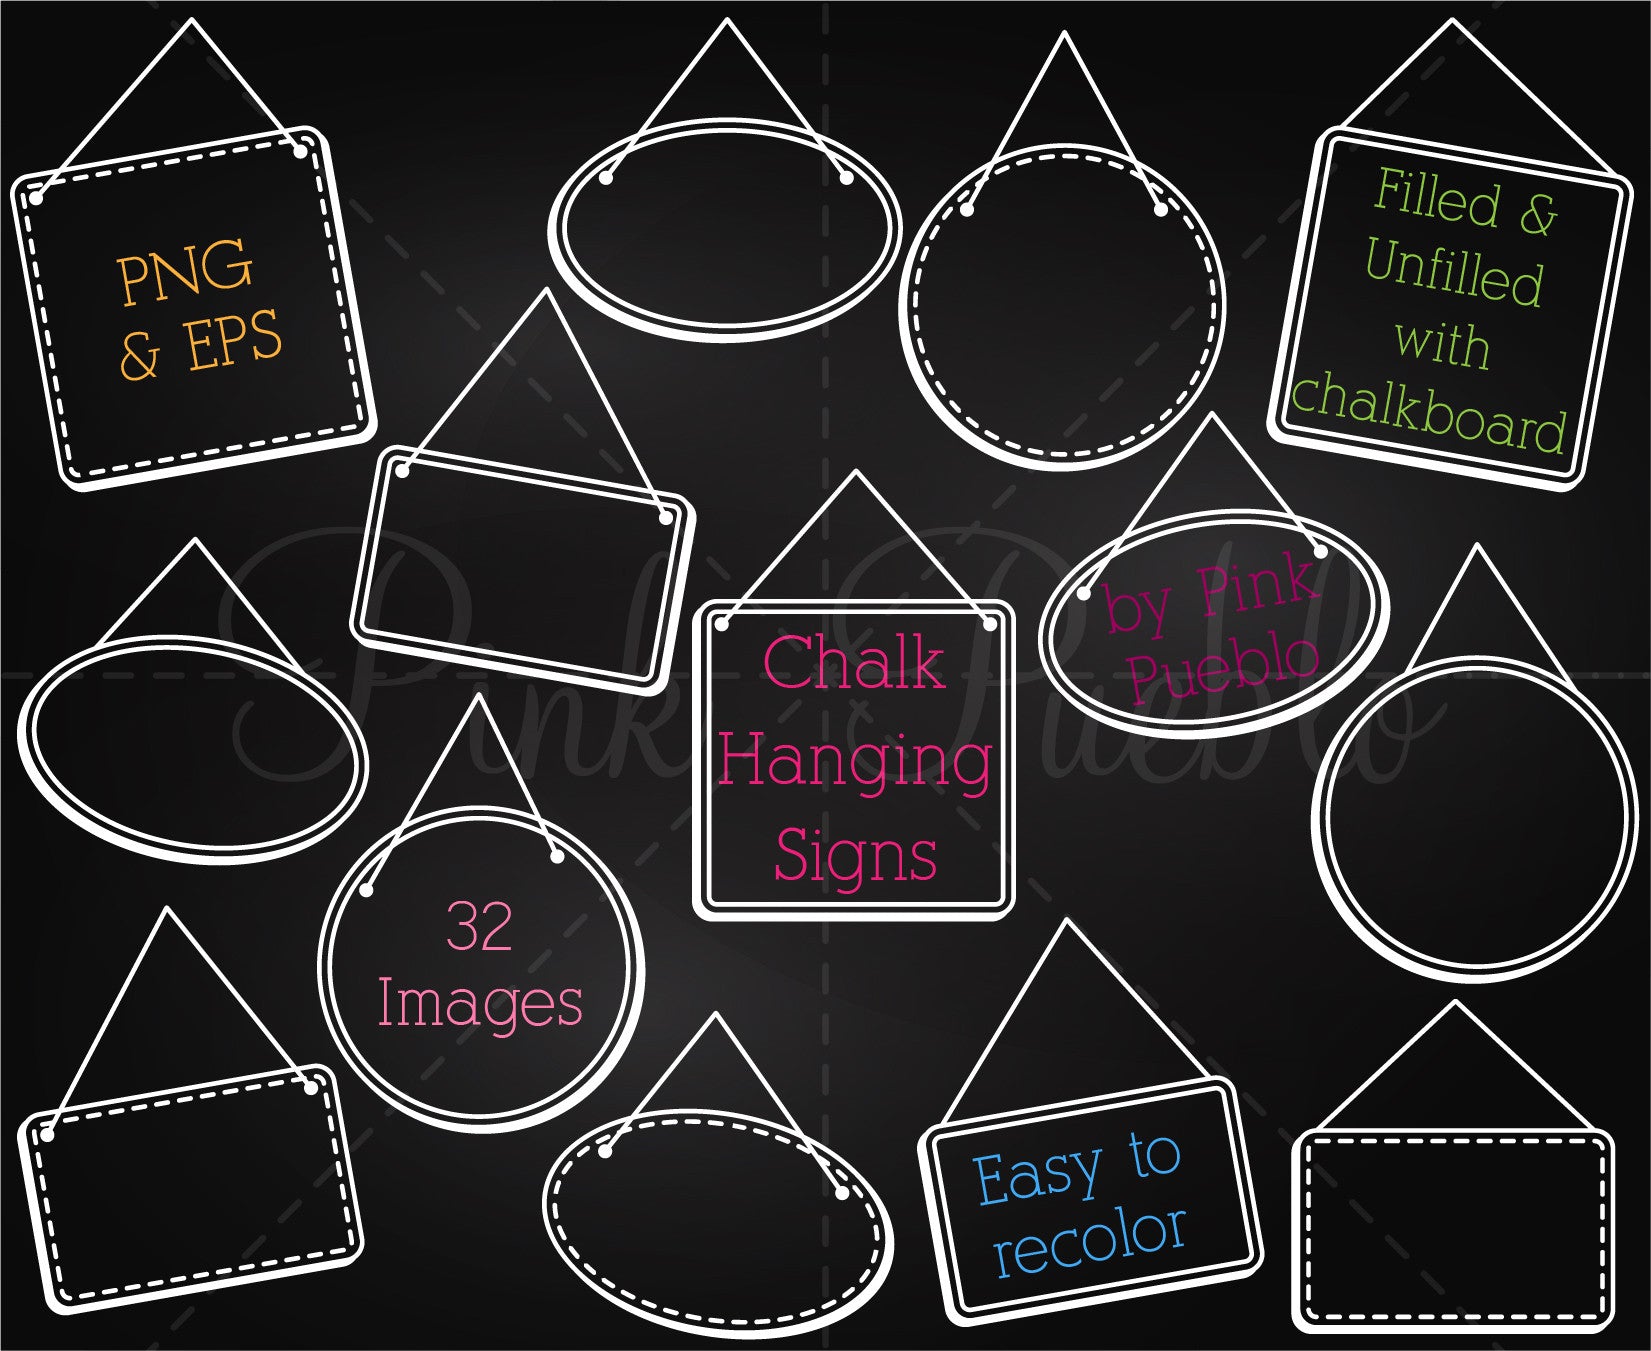 Chalkboard Labels Clipart & Vectors – PinkPueblo